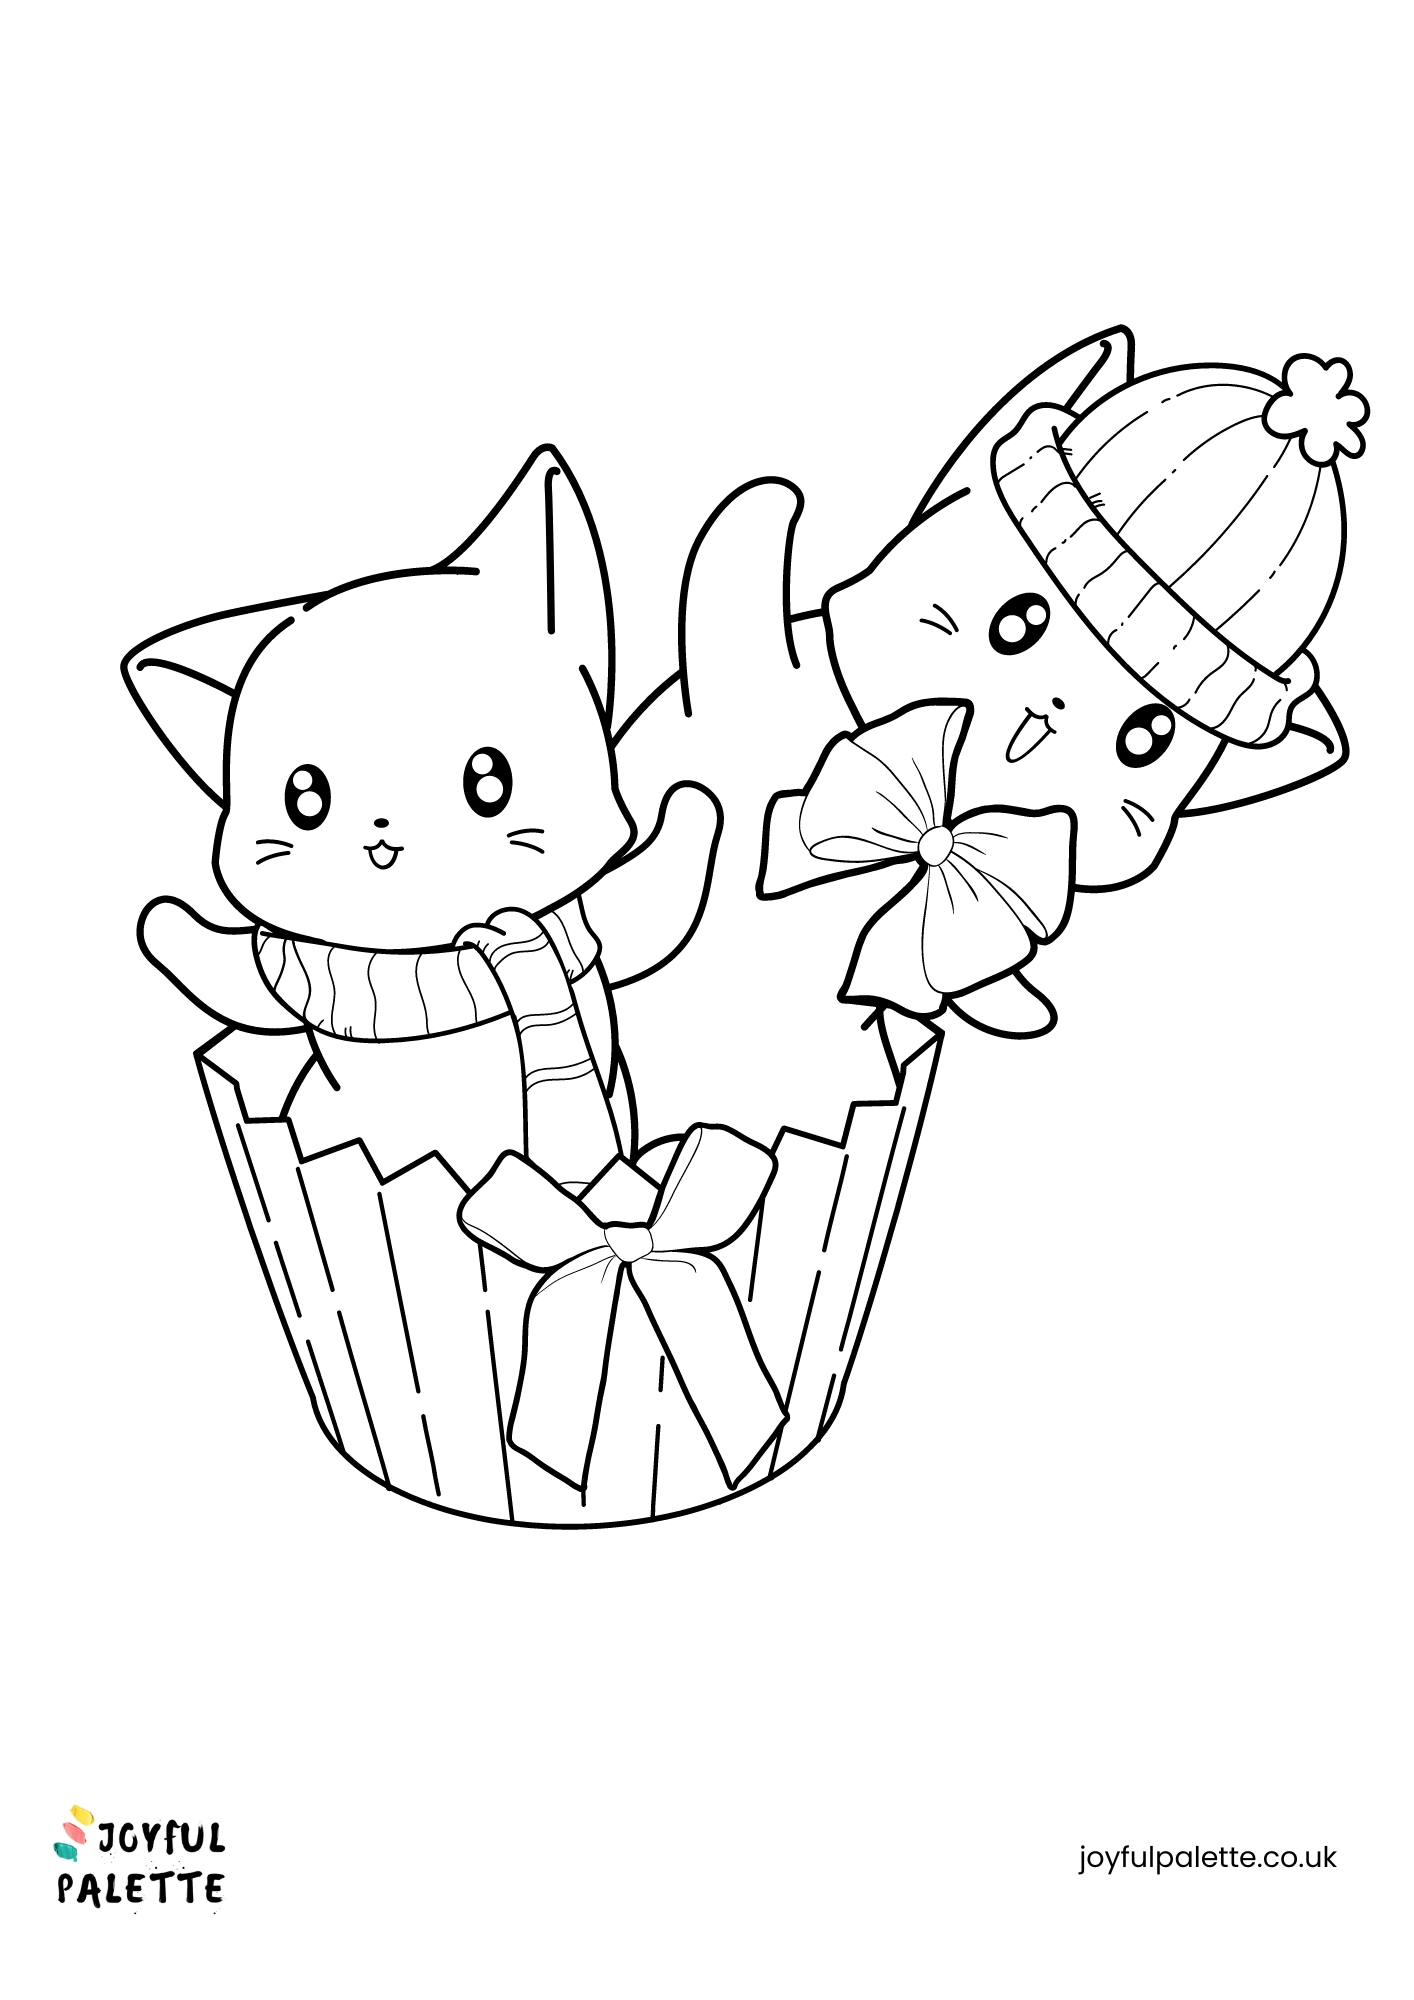 Kawaii Kittens Coloring Page